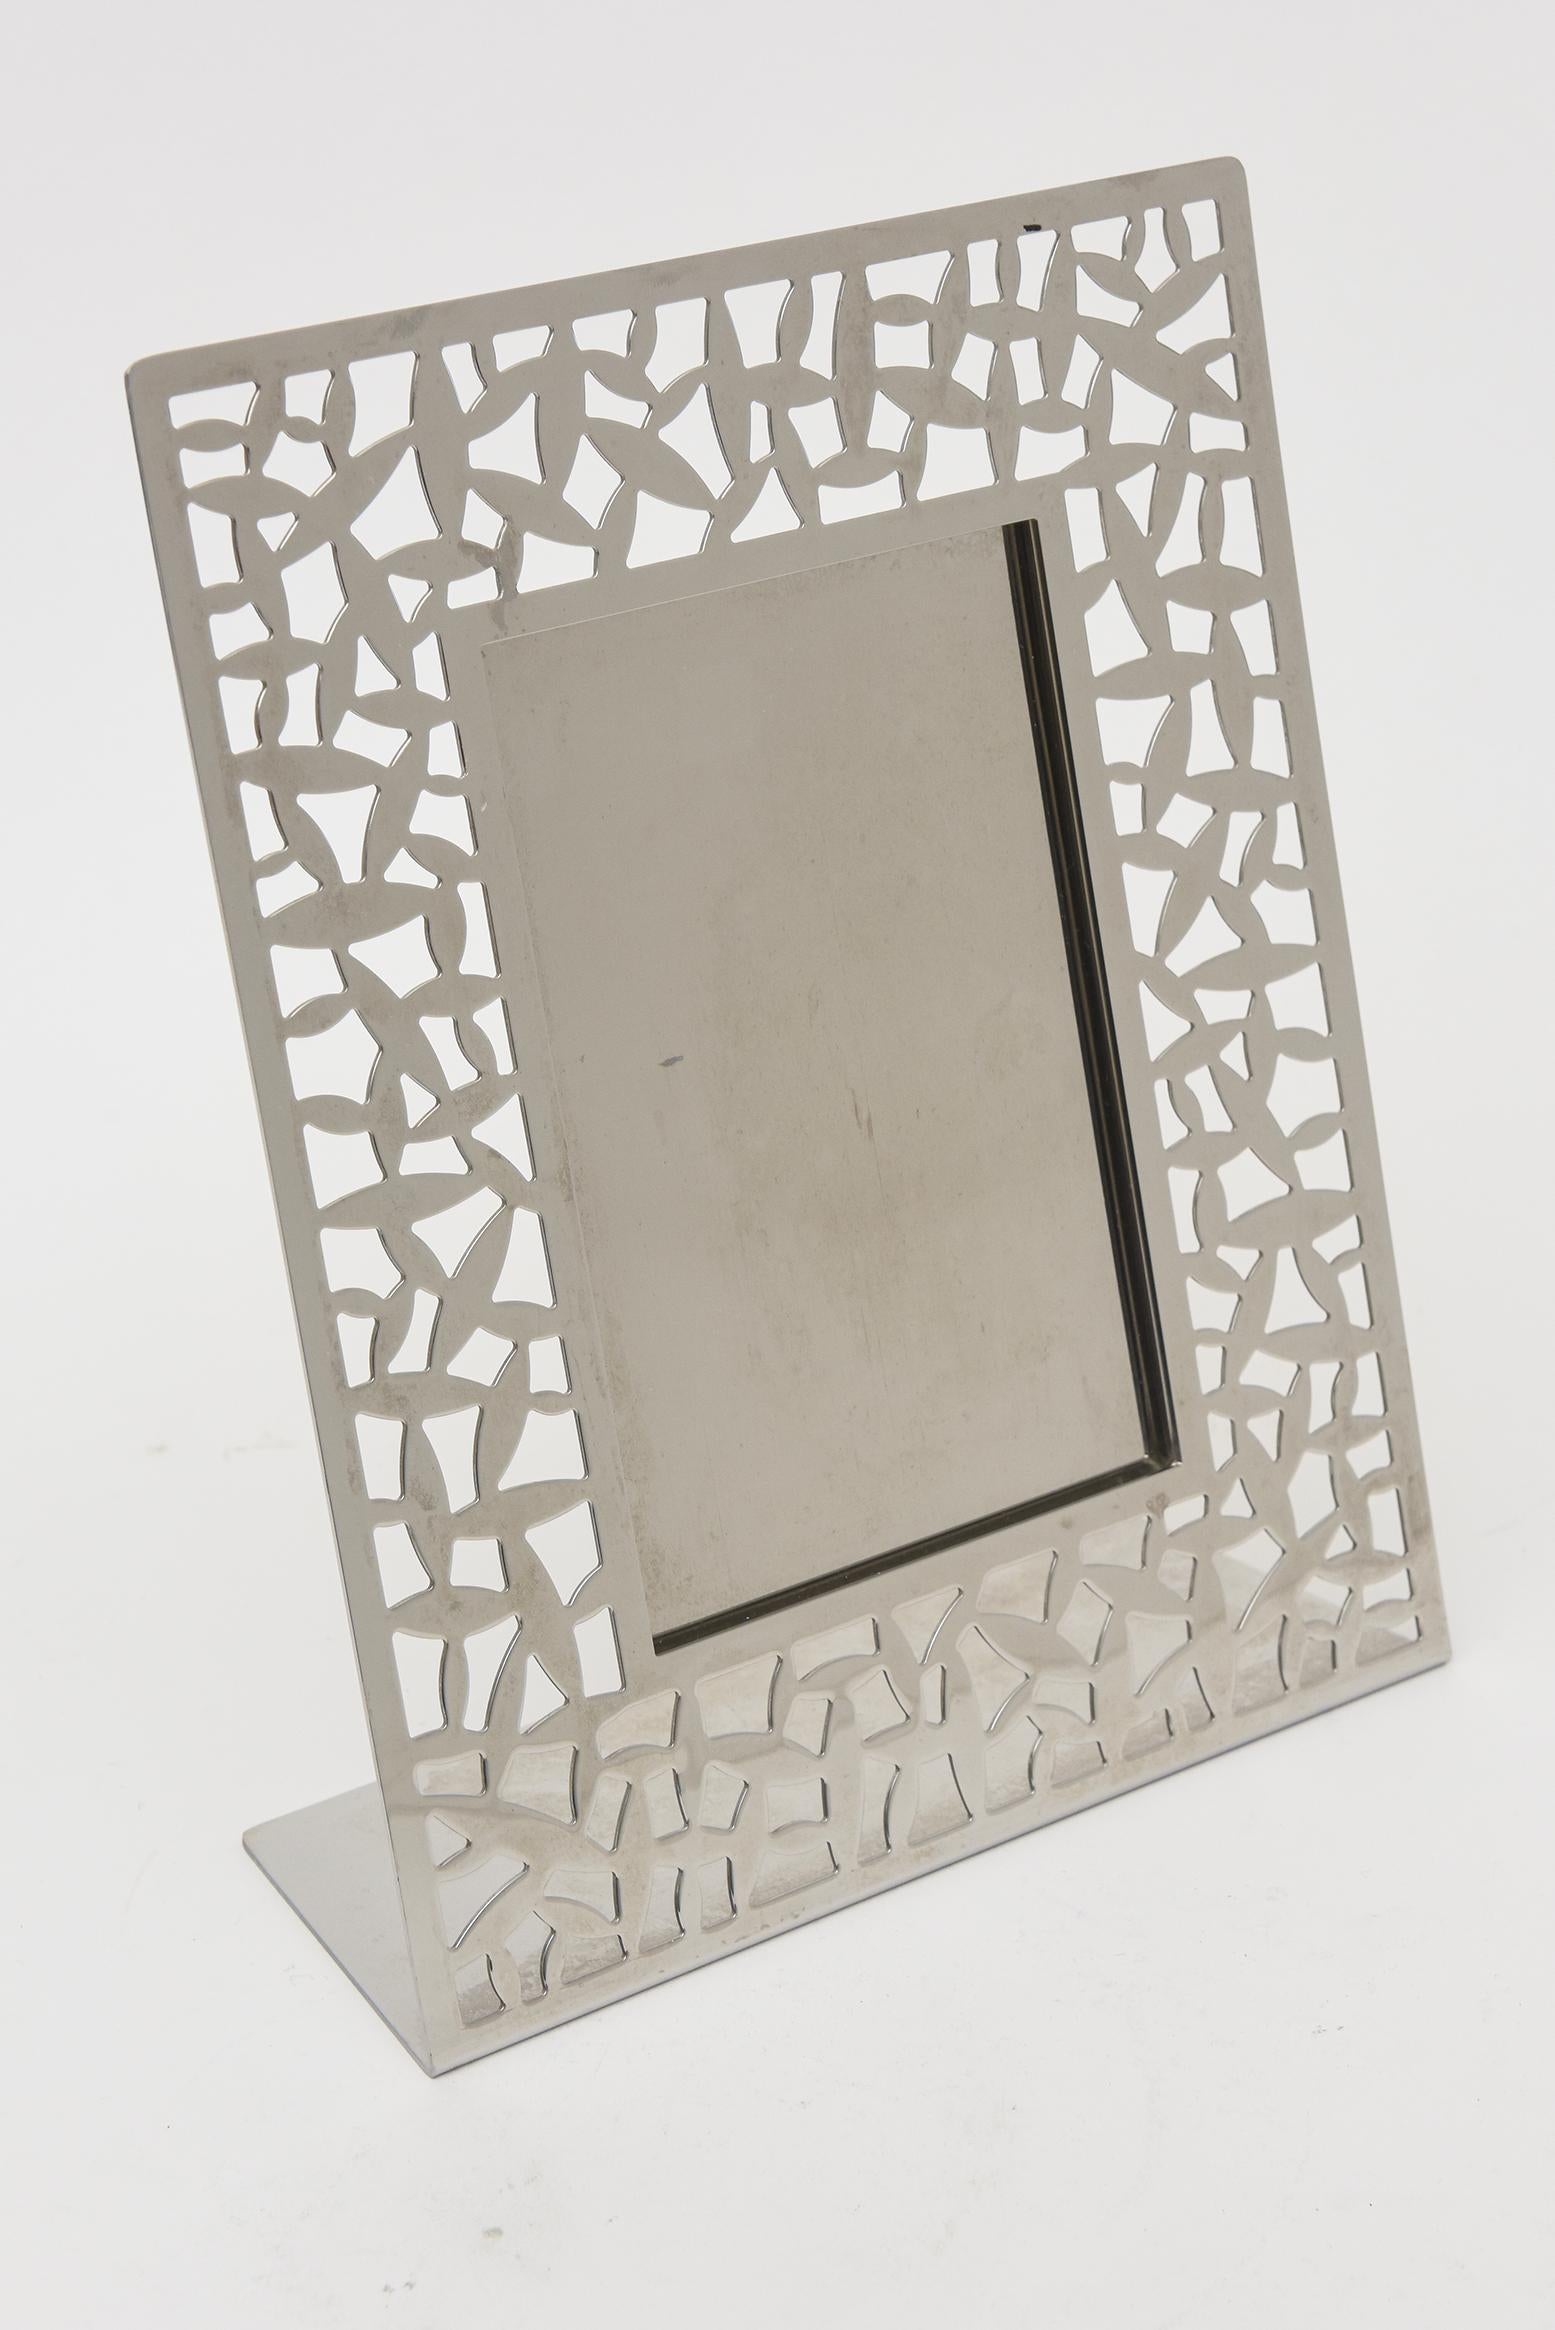 Ce fabuleux cadre photo italien en acier inoxydable d'Alessi est entièrement poinçonné. Le motif, appelé Calle, est moderne et abstrait. Il s'agit désormais d'une pièce abandonnée. On peut y lire Alessi ItalyCSA M Sansoni 2004 Inox 18-10. Depuis